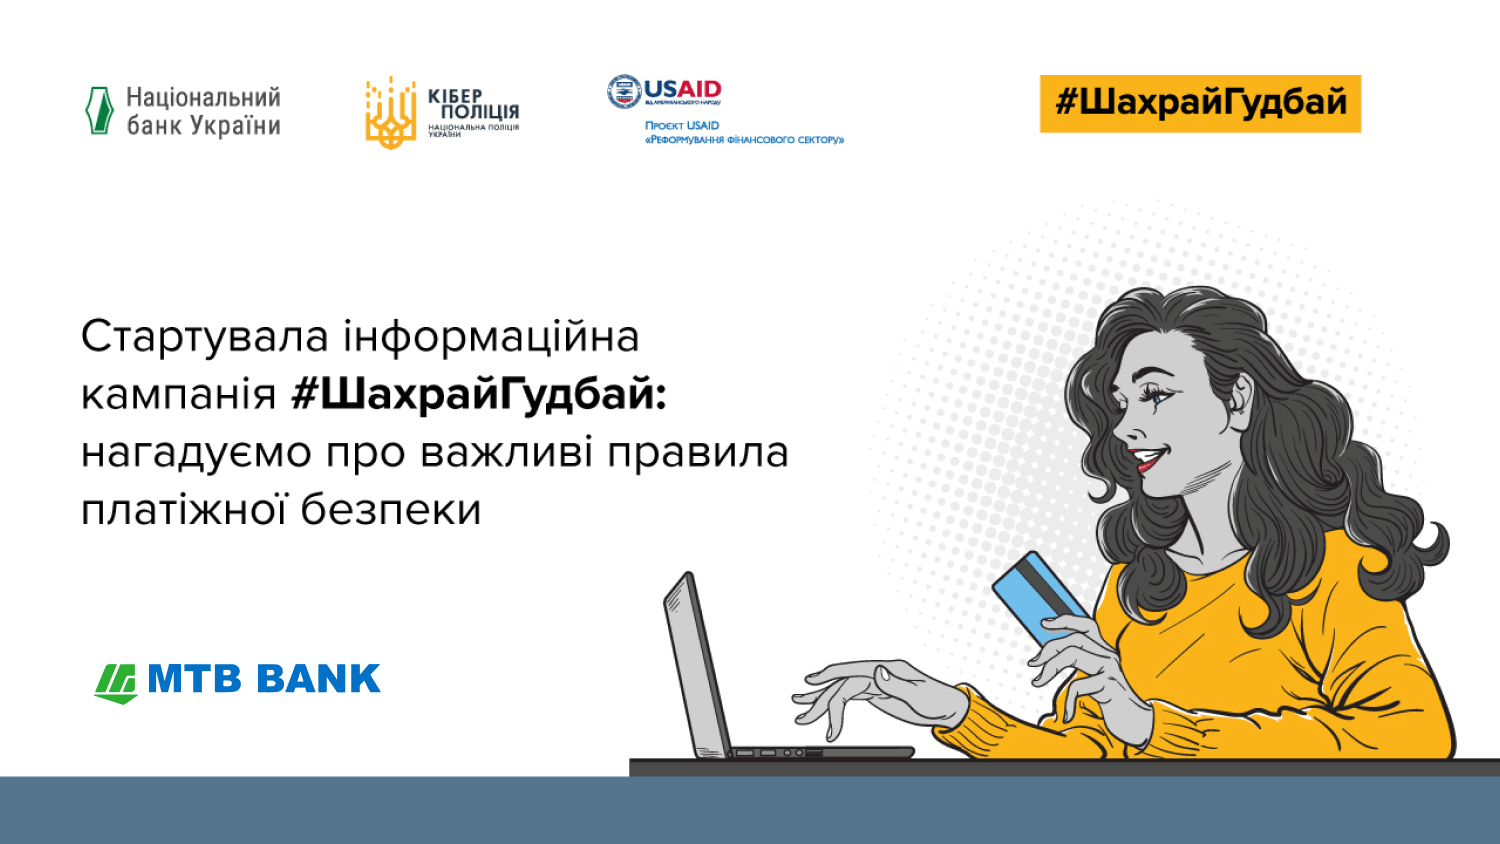 МТБ Банк  став партнером кампанії з платіжної безпеки #ШахрайГудбай, яку проводить Нацбанк та Кіберполіція - фото - mtb.ua